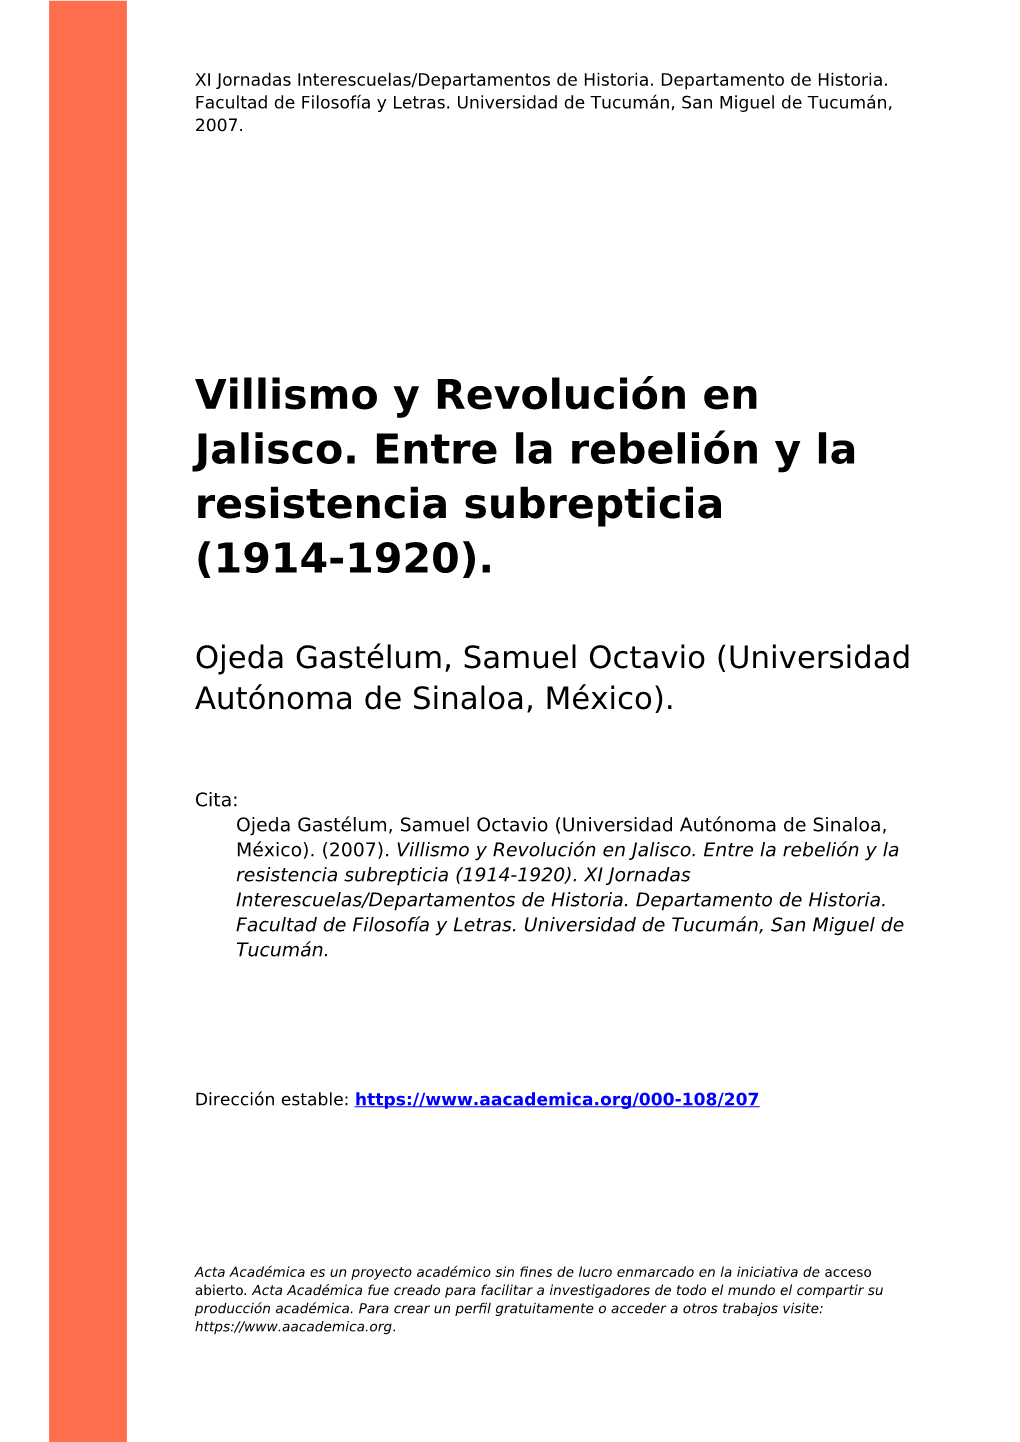 Villismo Y Revolución En Jalisco. Entre La Rebelión Y La Resistencia Subrepticia (1914-1920)